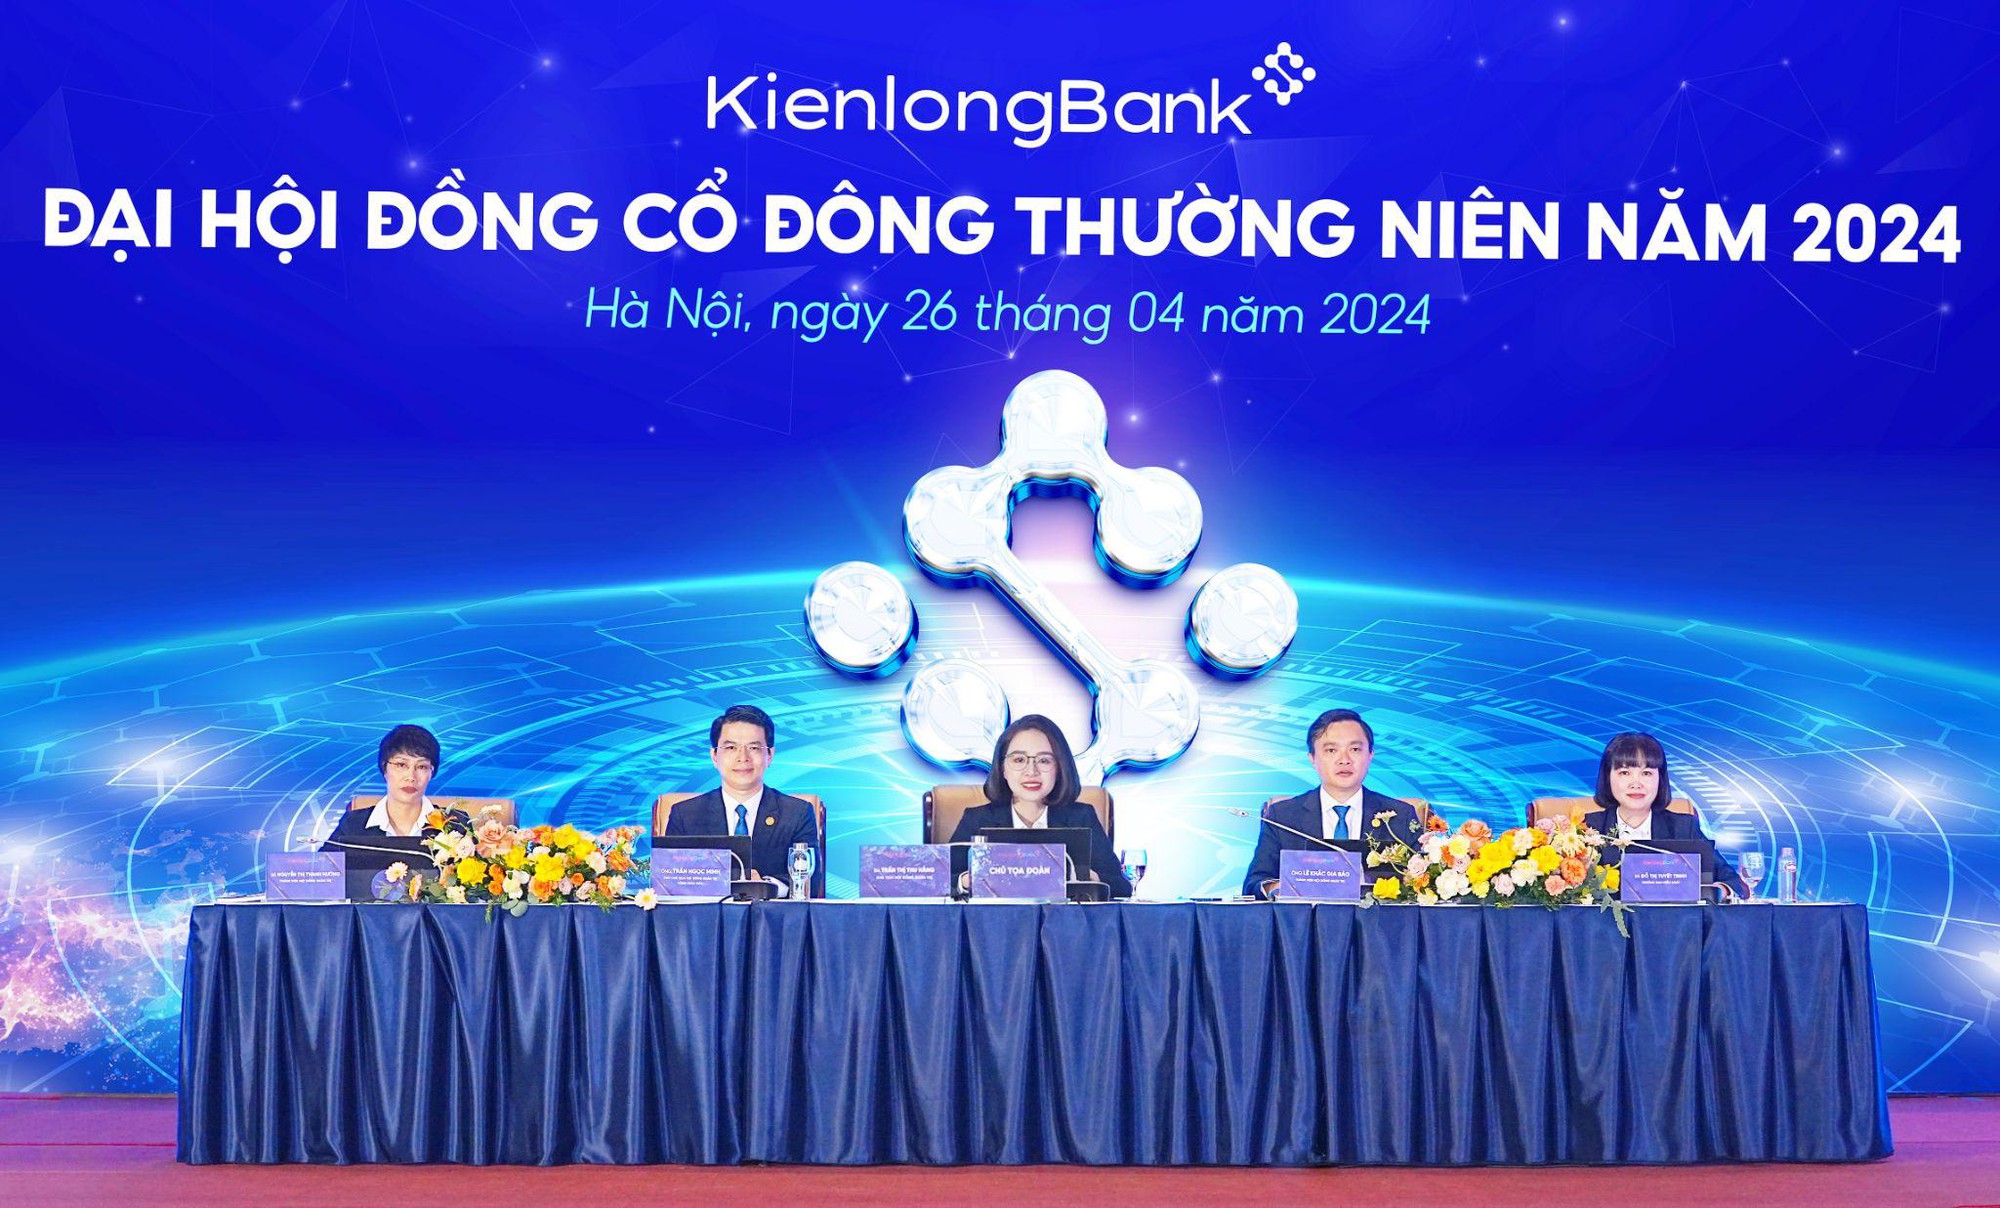 ĐHĐCĐ 2024: KienlongBank đặt mục tiêu lợi nhuận 800 tỷ đồng năm 2024- Ảnh 1.